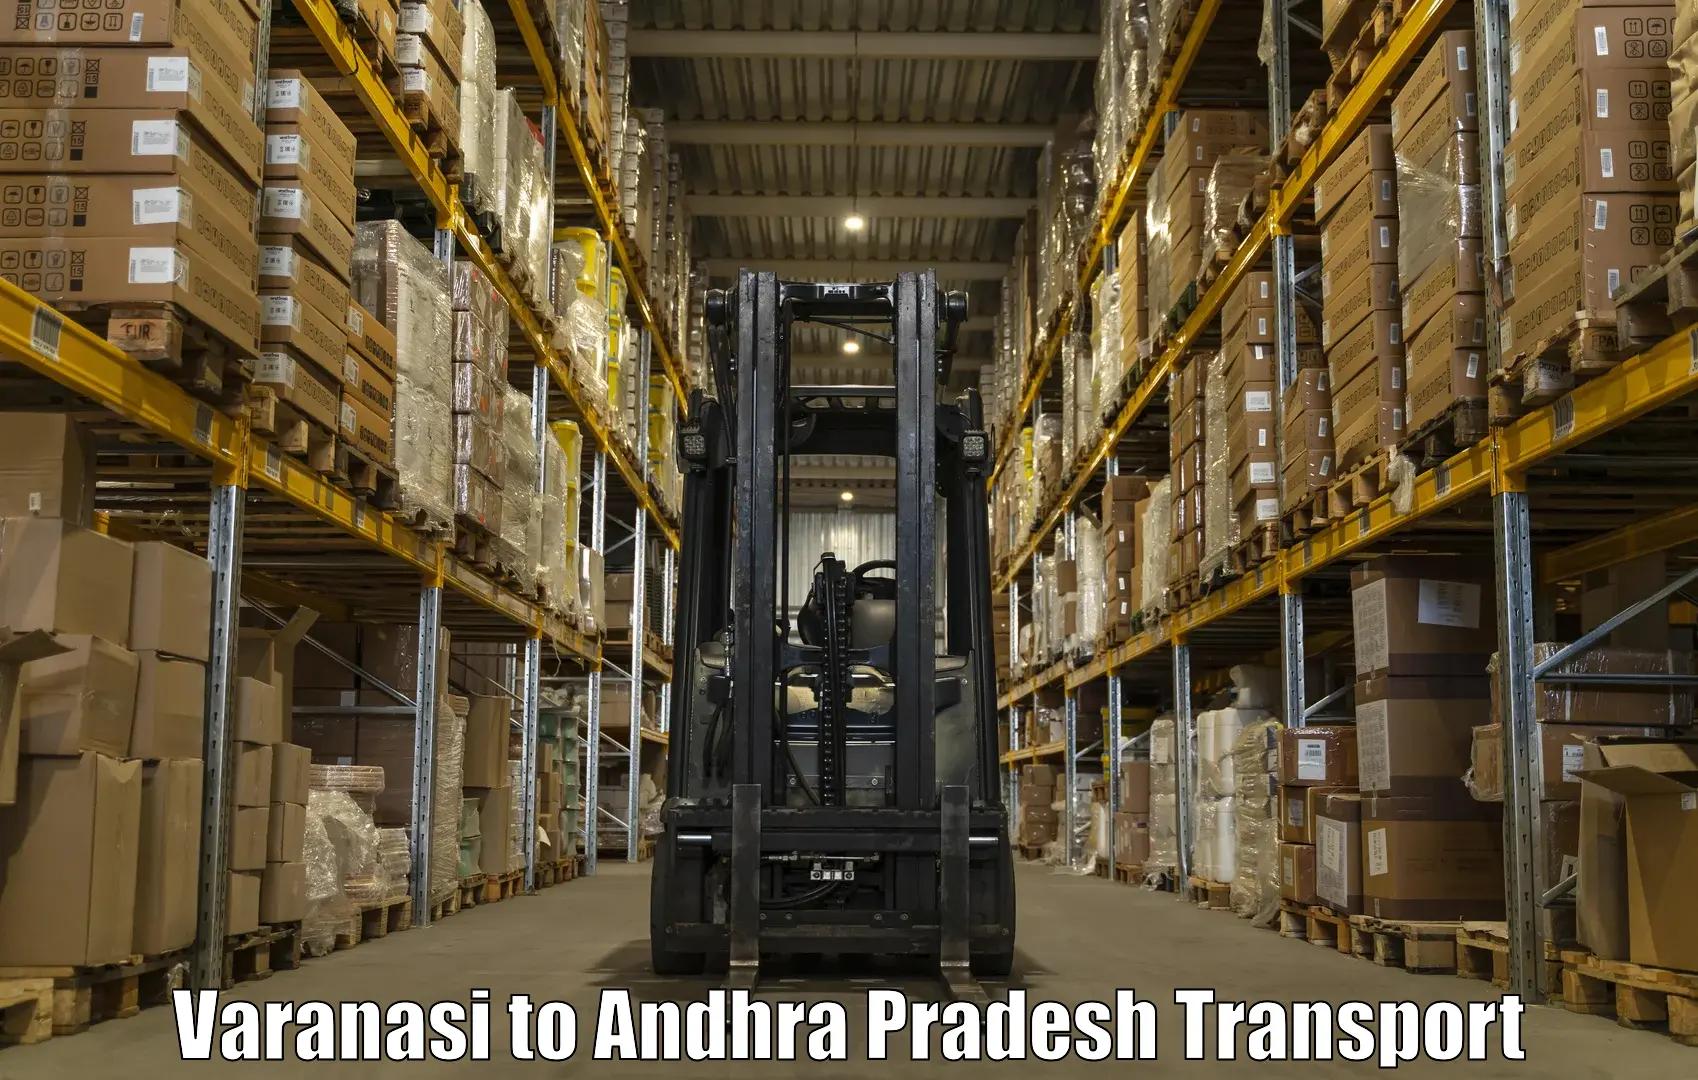 Cargo transportation services Varanasi to Bapatla